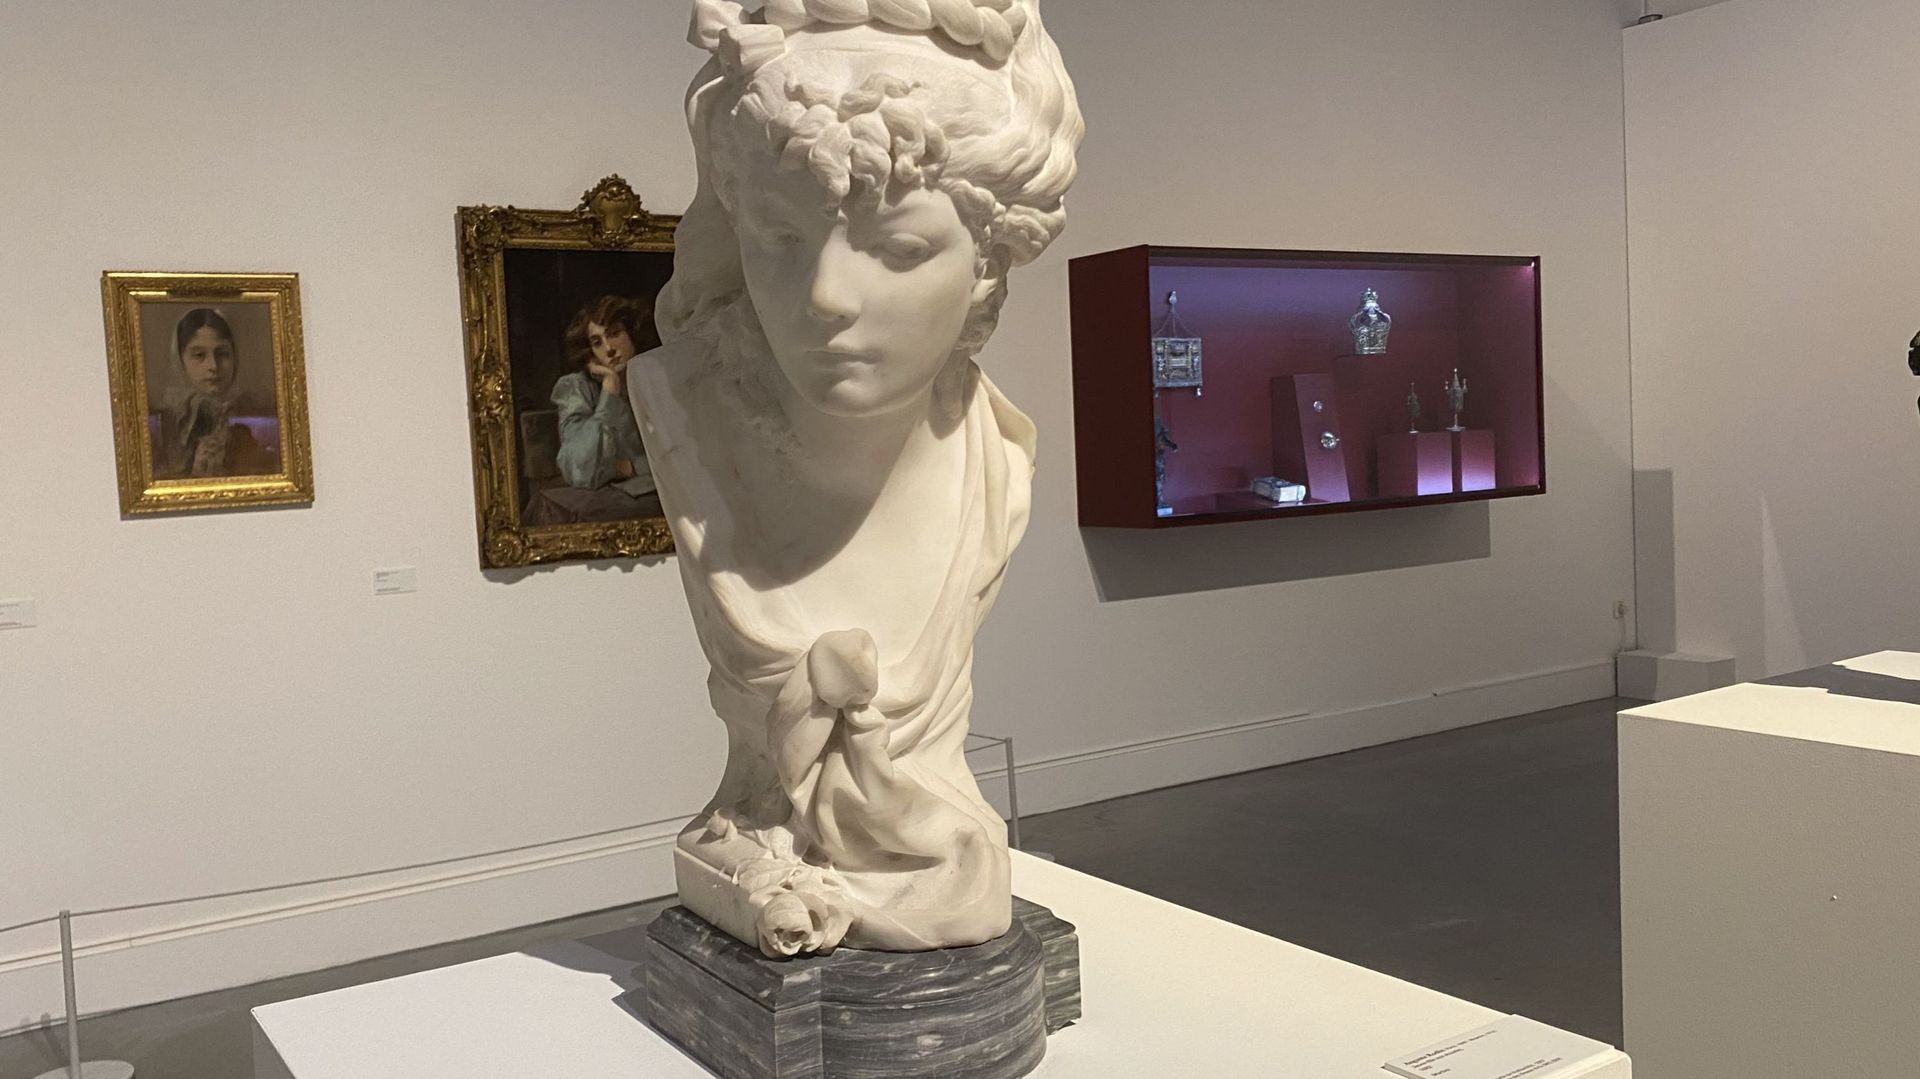 La "Jeune fille aux écoutes", de Rodin, fait partie des œuvres présentées.